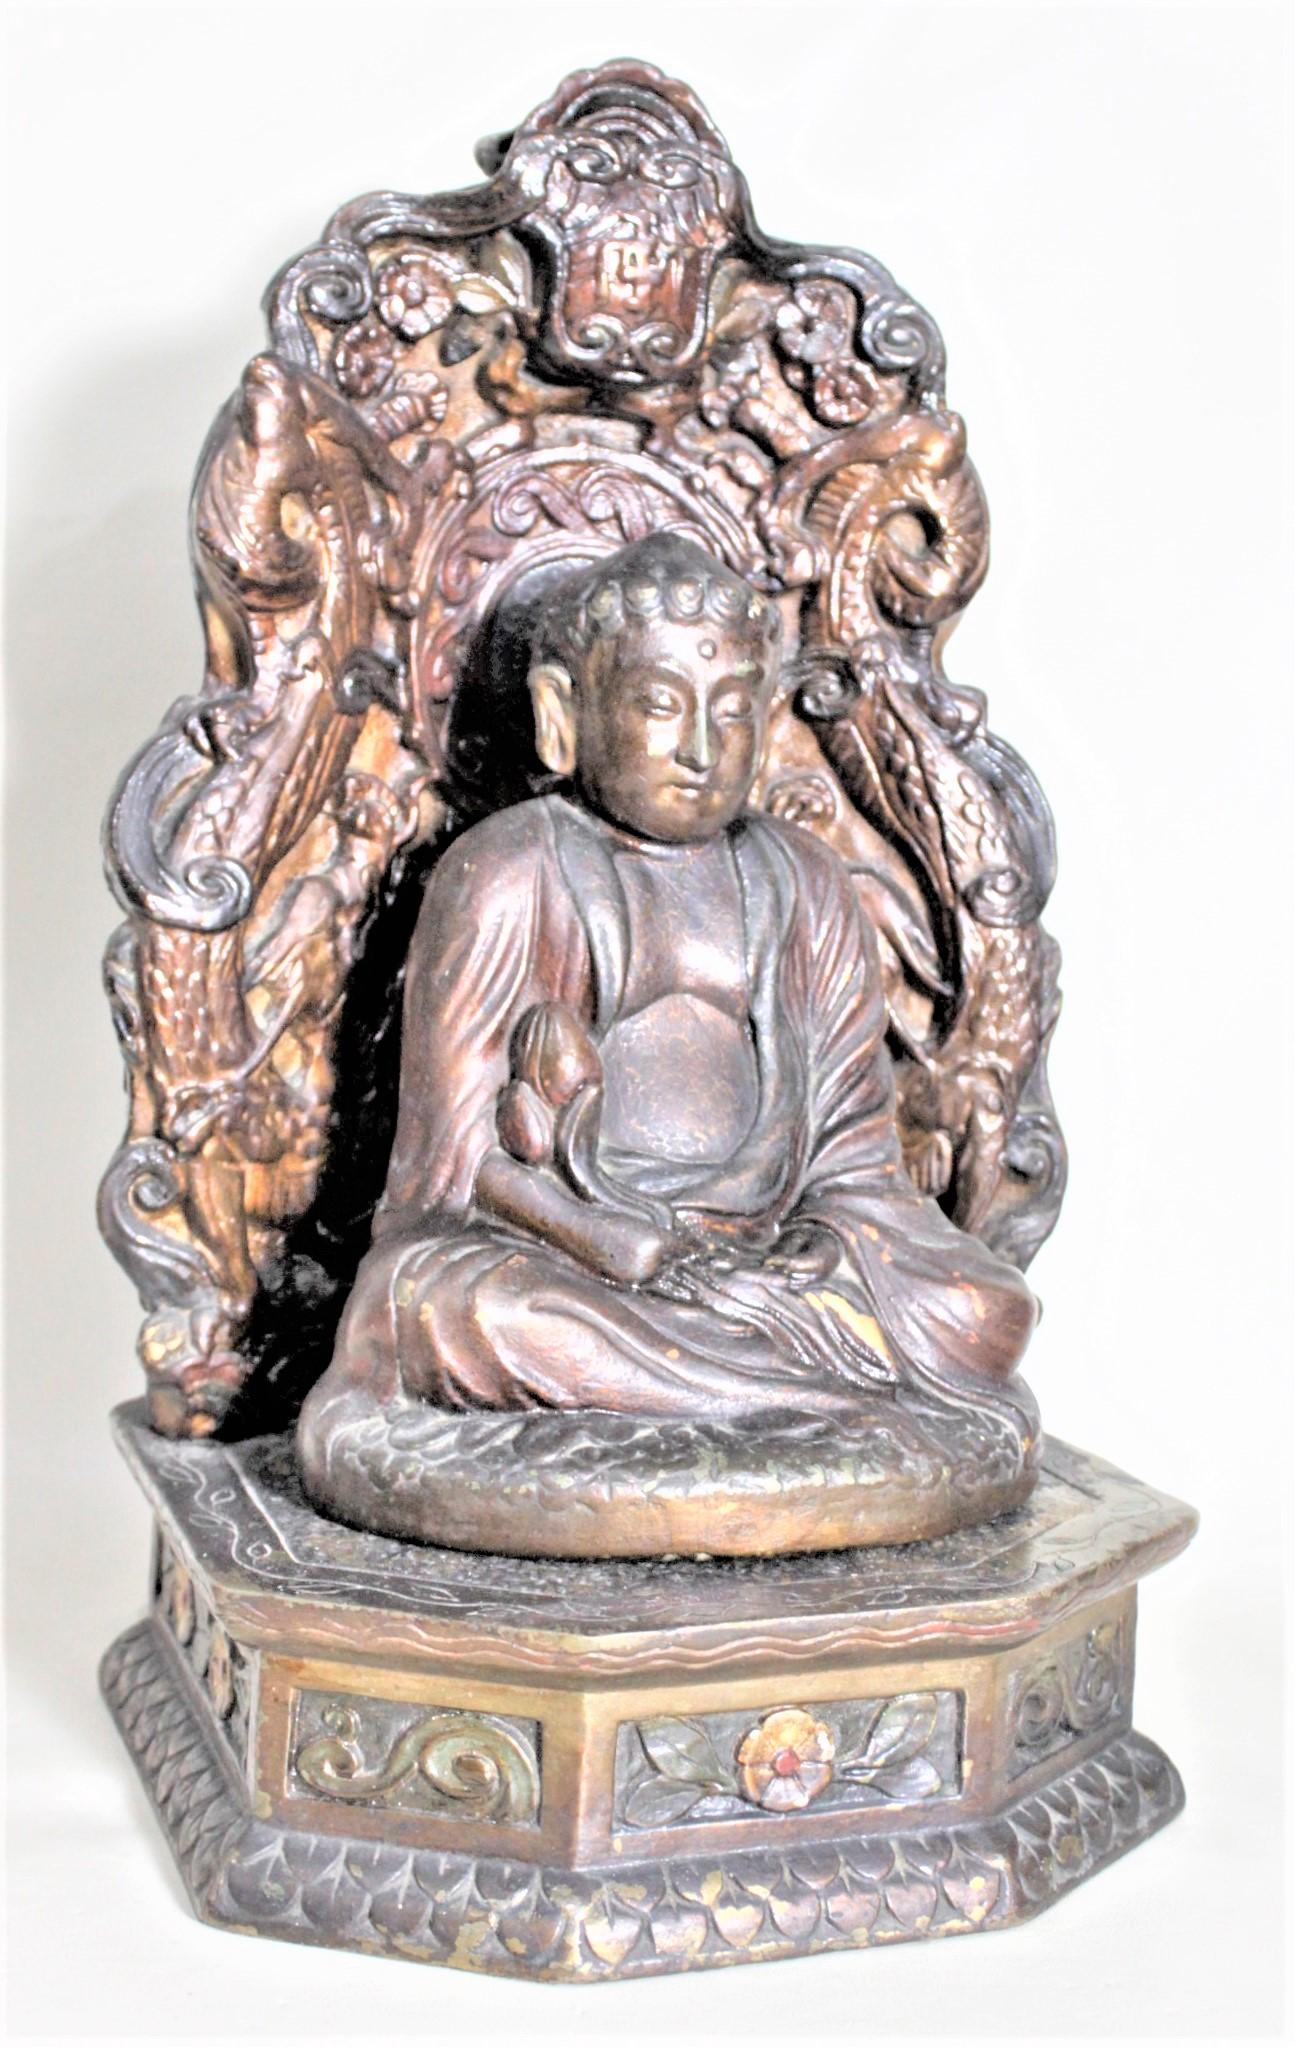 Diese antike Buddha-Skulptur aus gegossener und getauchter Bronze mit Ständer ist von einem unbekannten Hersteller signiert und wurde vermutlich um 1920 in China hergestellt. Sowohl der verzierte Ständer als auch die Buddha-Skulptur bestehen aus